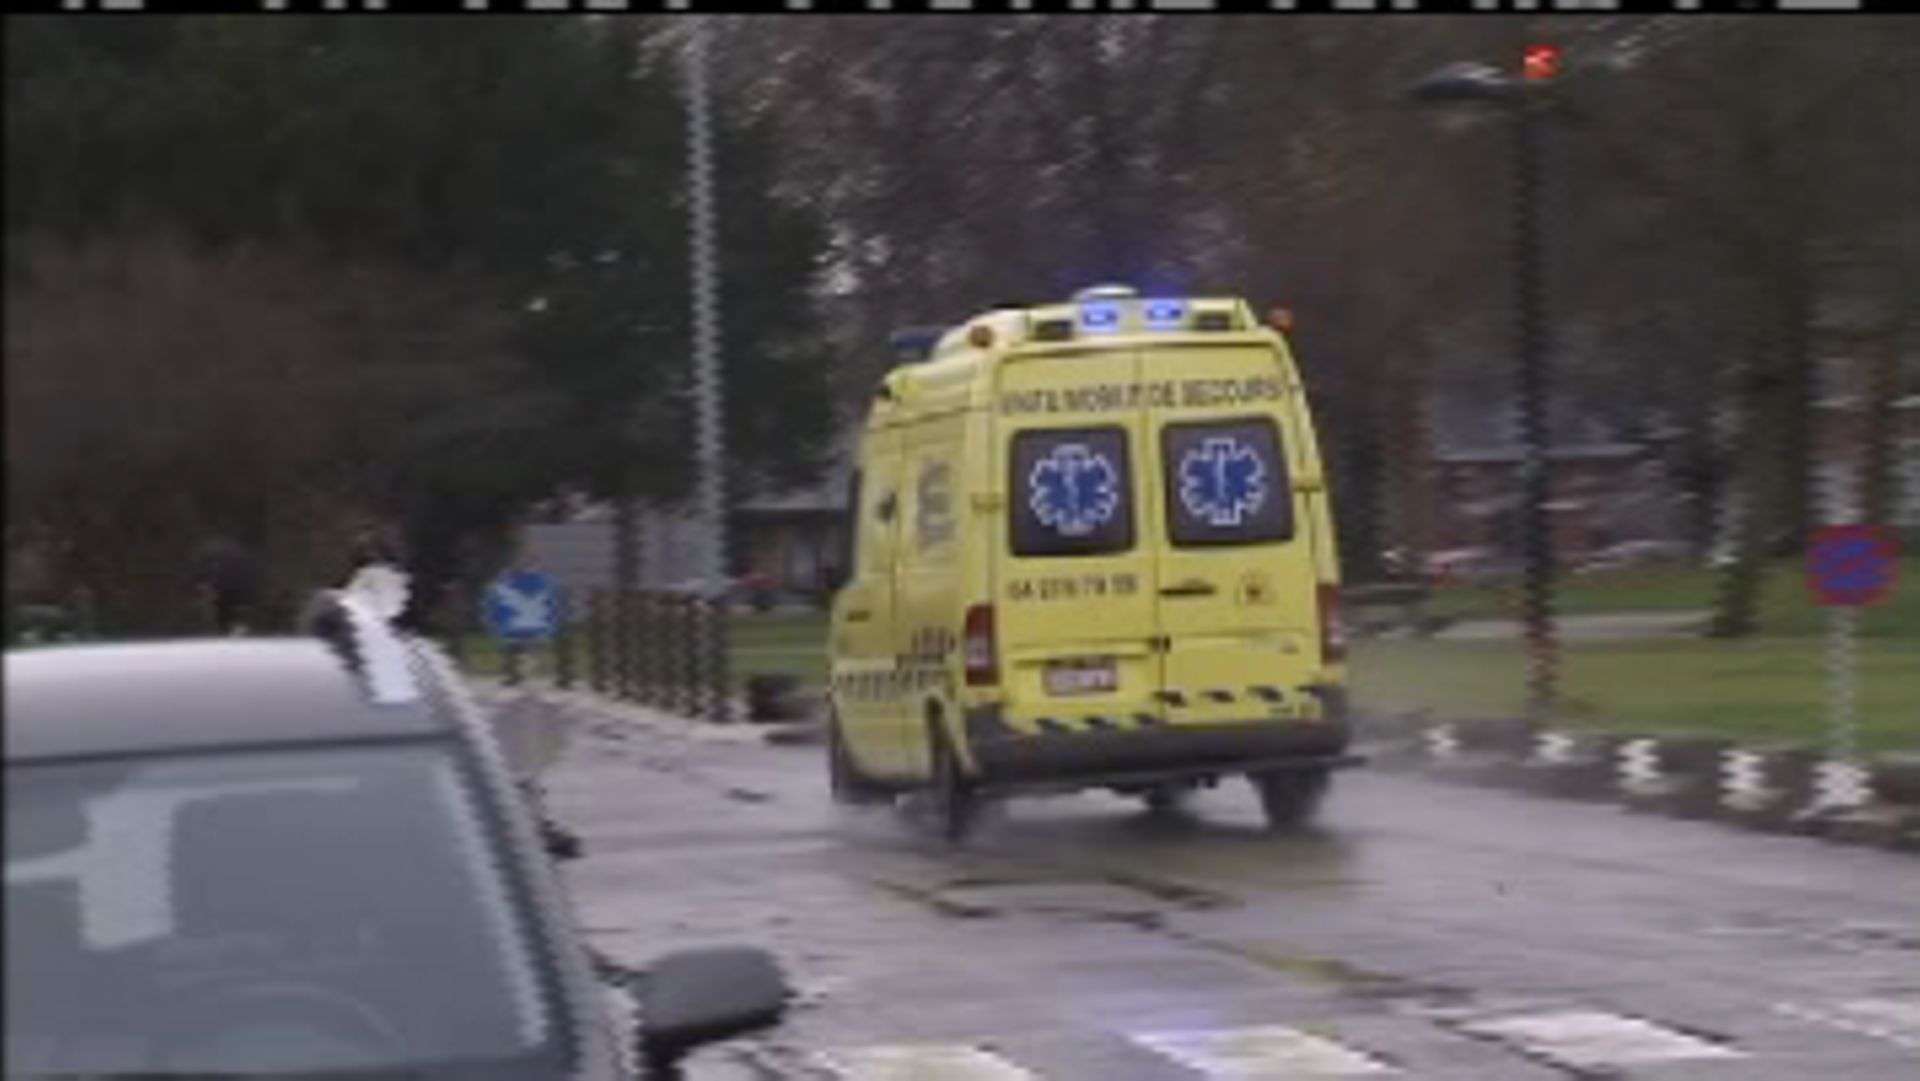 Tuerie à Liège: qui va payer les soins hospitaliers? 